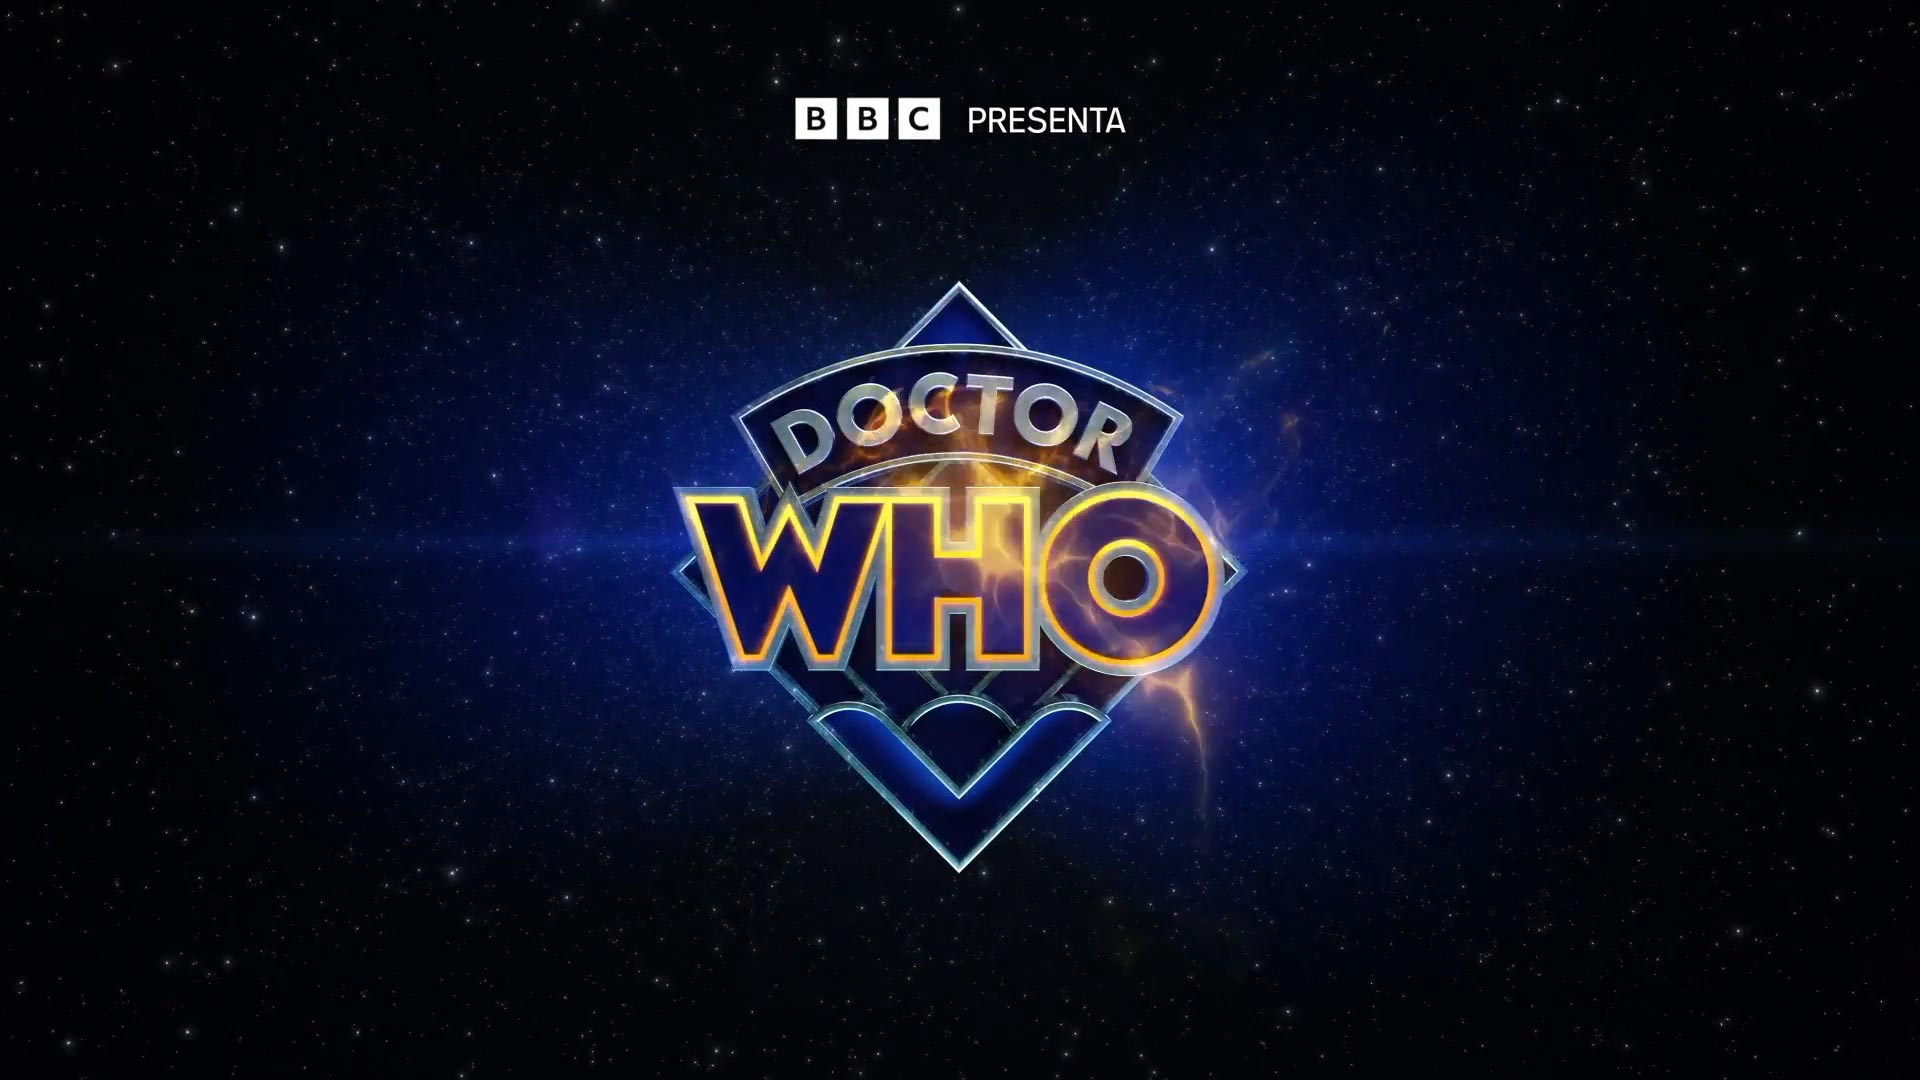 Fonte immagine:https://www.movietele.it/wp-content/uploads/2023/10/Doctor-Who-Disney-annuncio-speciali-60o-Anniversario.jpg